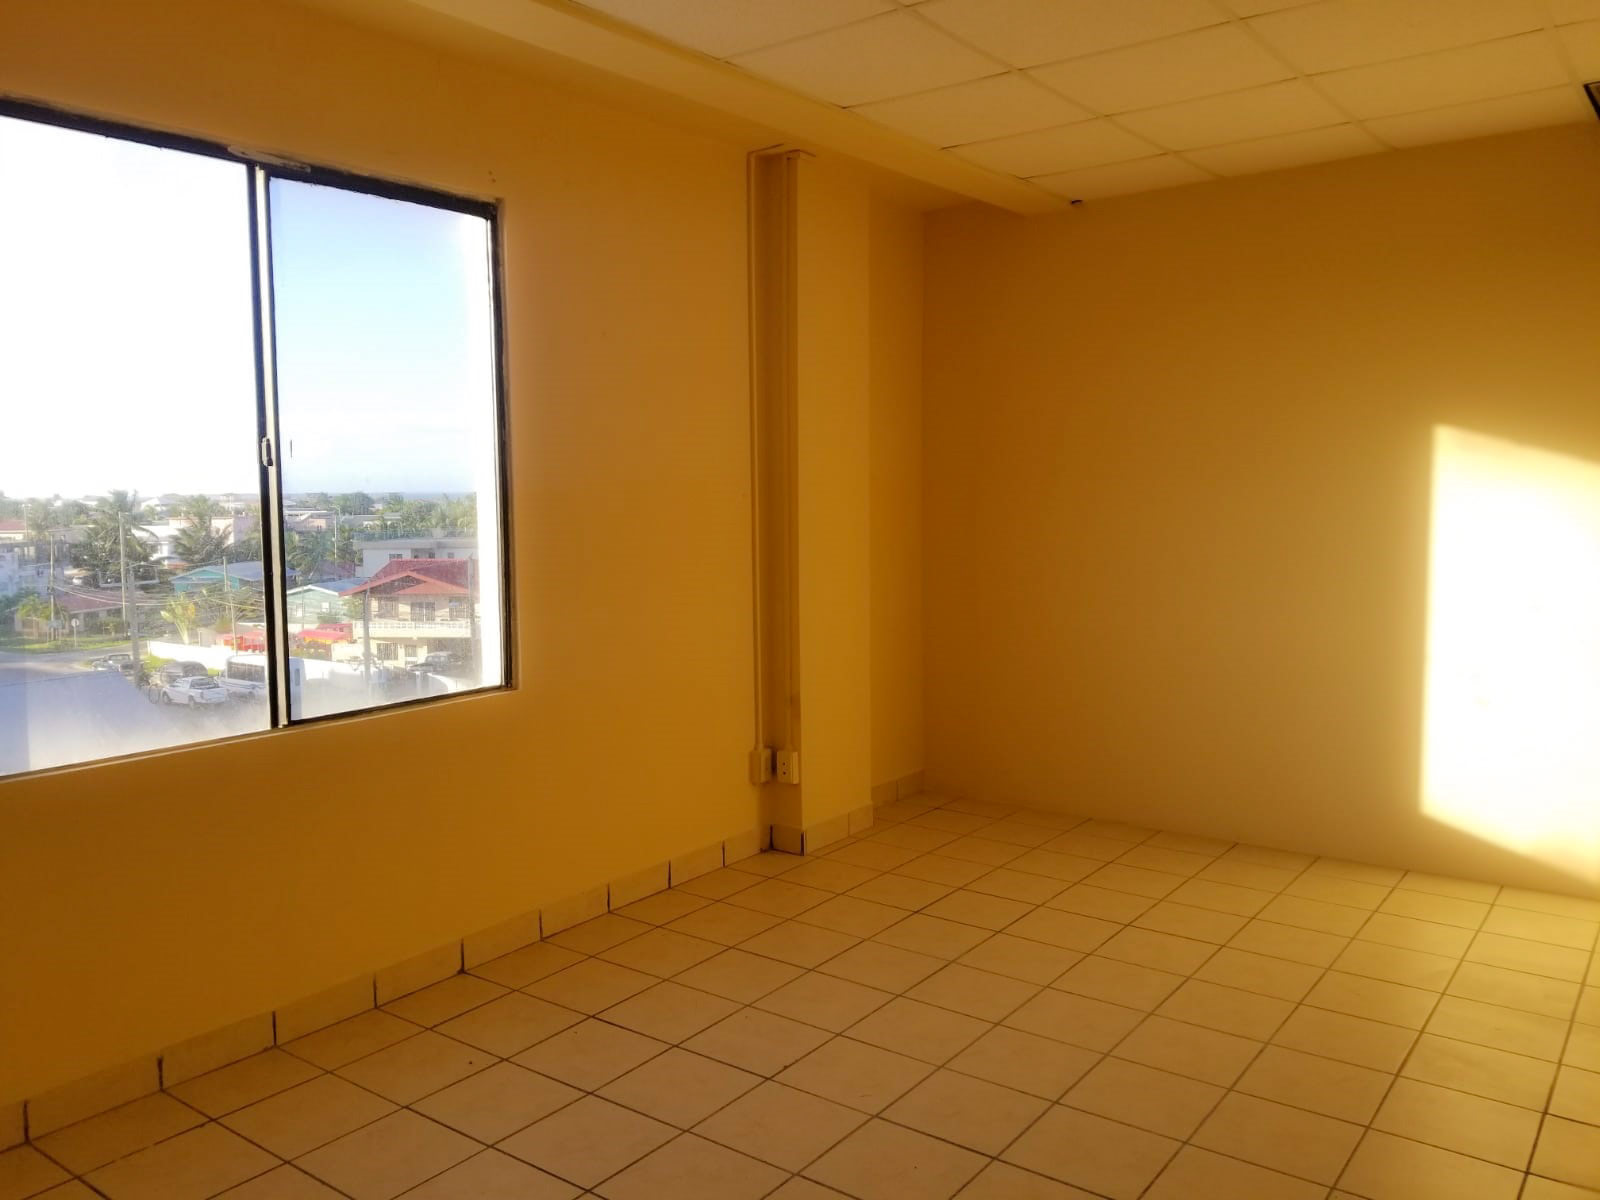 Office Space 3rd floor in Belize City